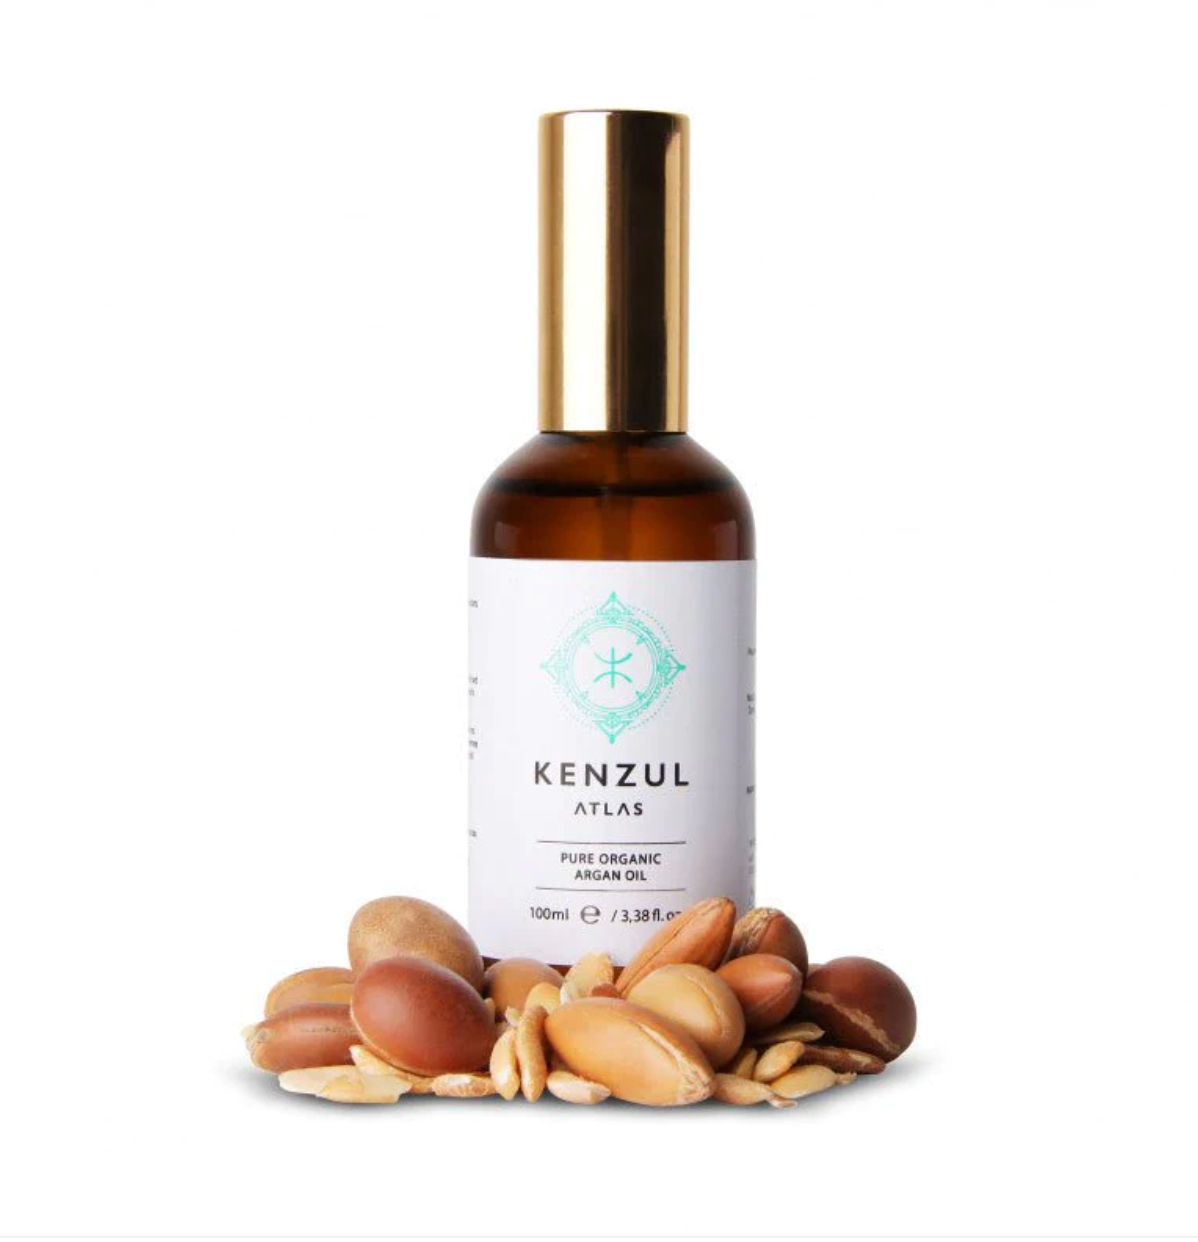 Hair growth oil kit - Kenzul Atlas